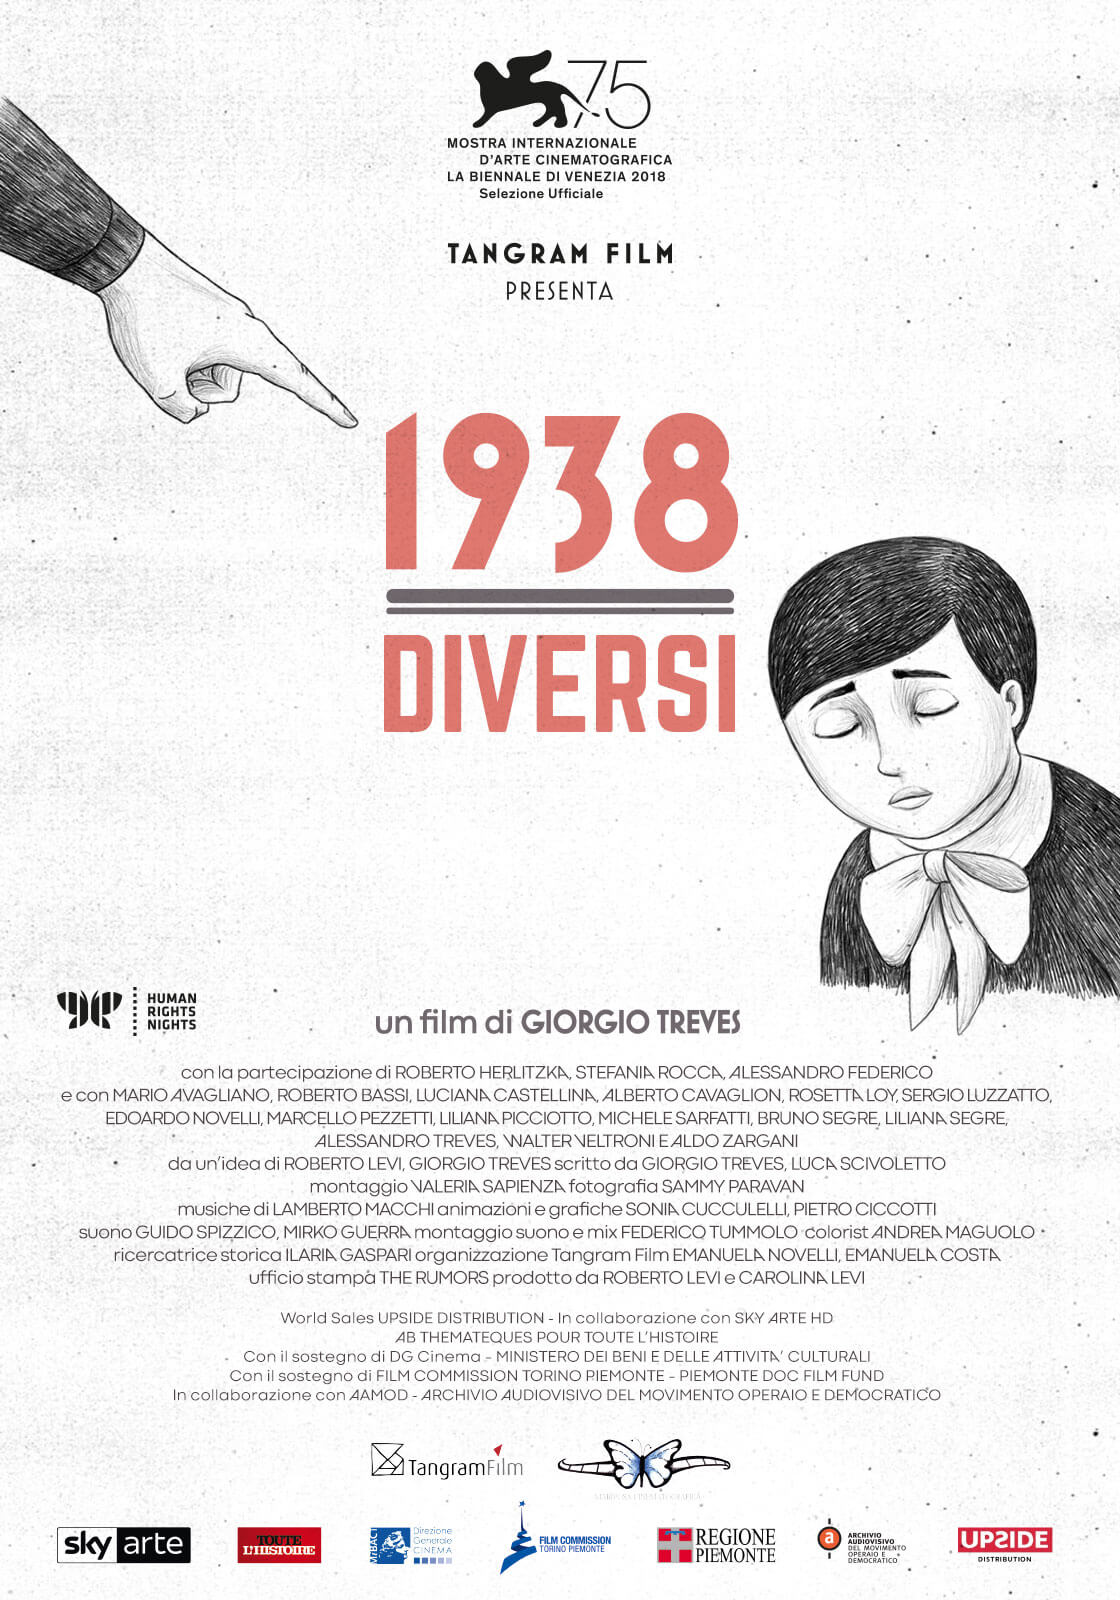 1938 Diversi, esce al cinema e arriva su Sky Arte il doc sulle Leggi Razziali Fasciste - 1938 Diversi Locandina WEB 1200X1600 - Gay.it